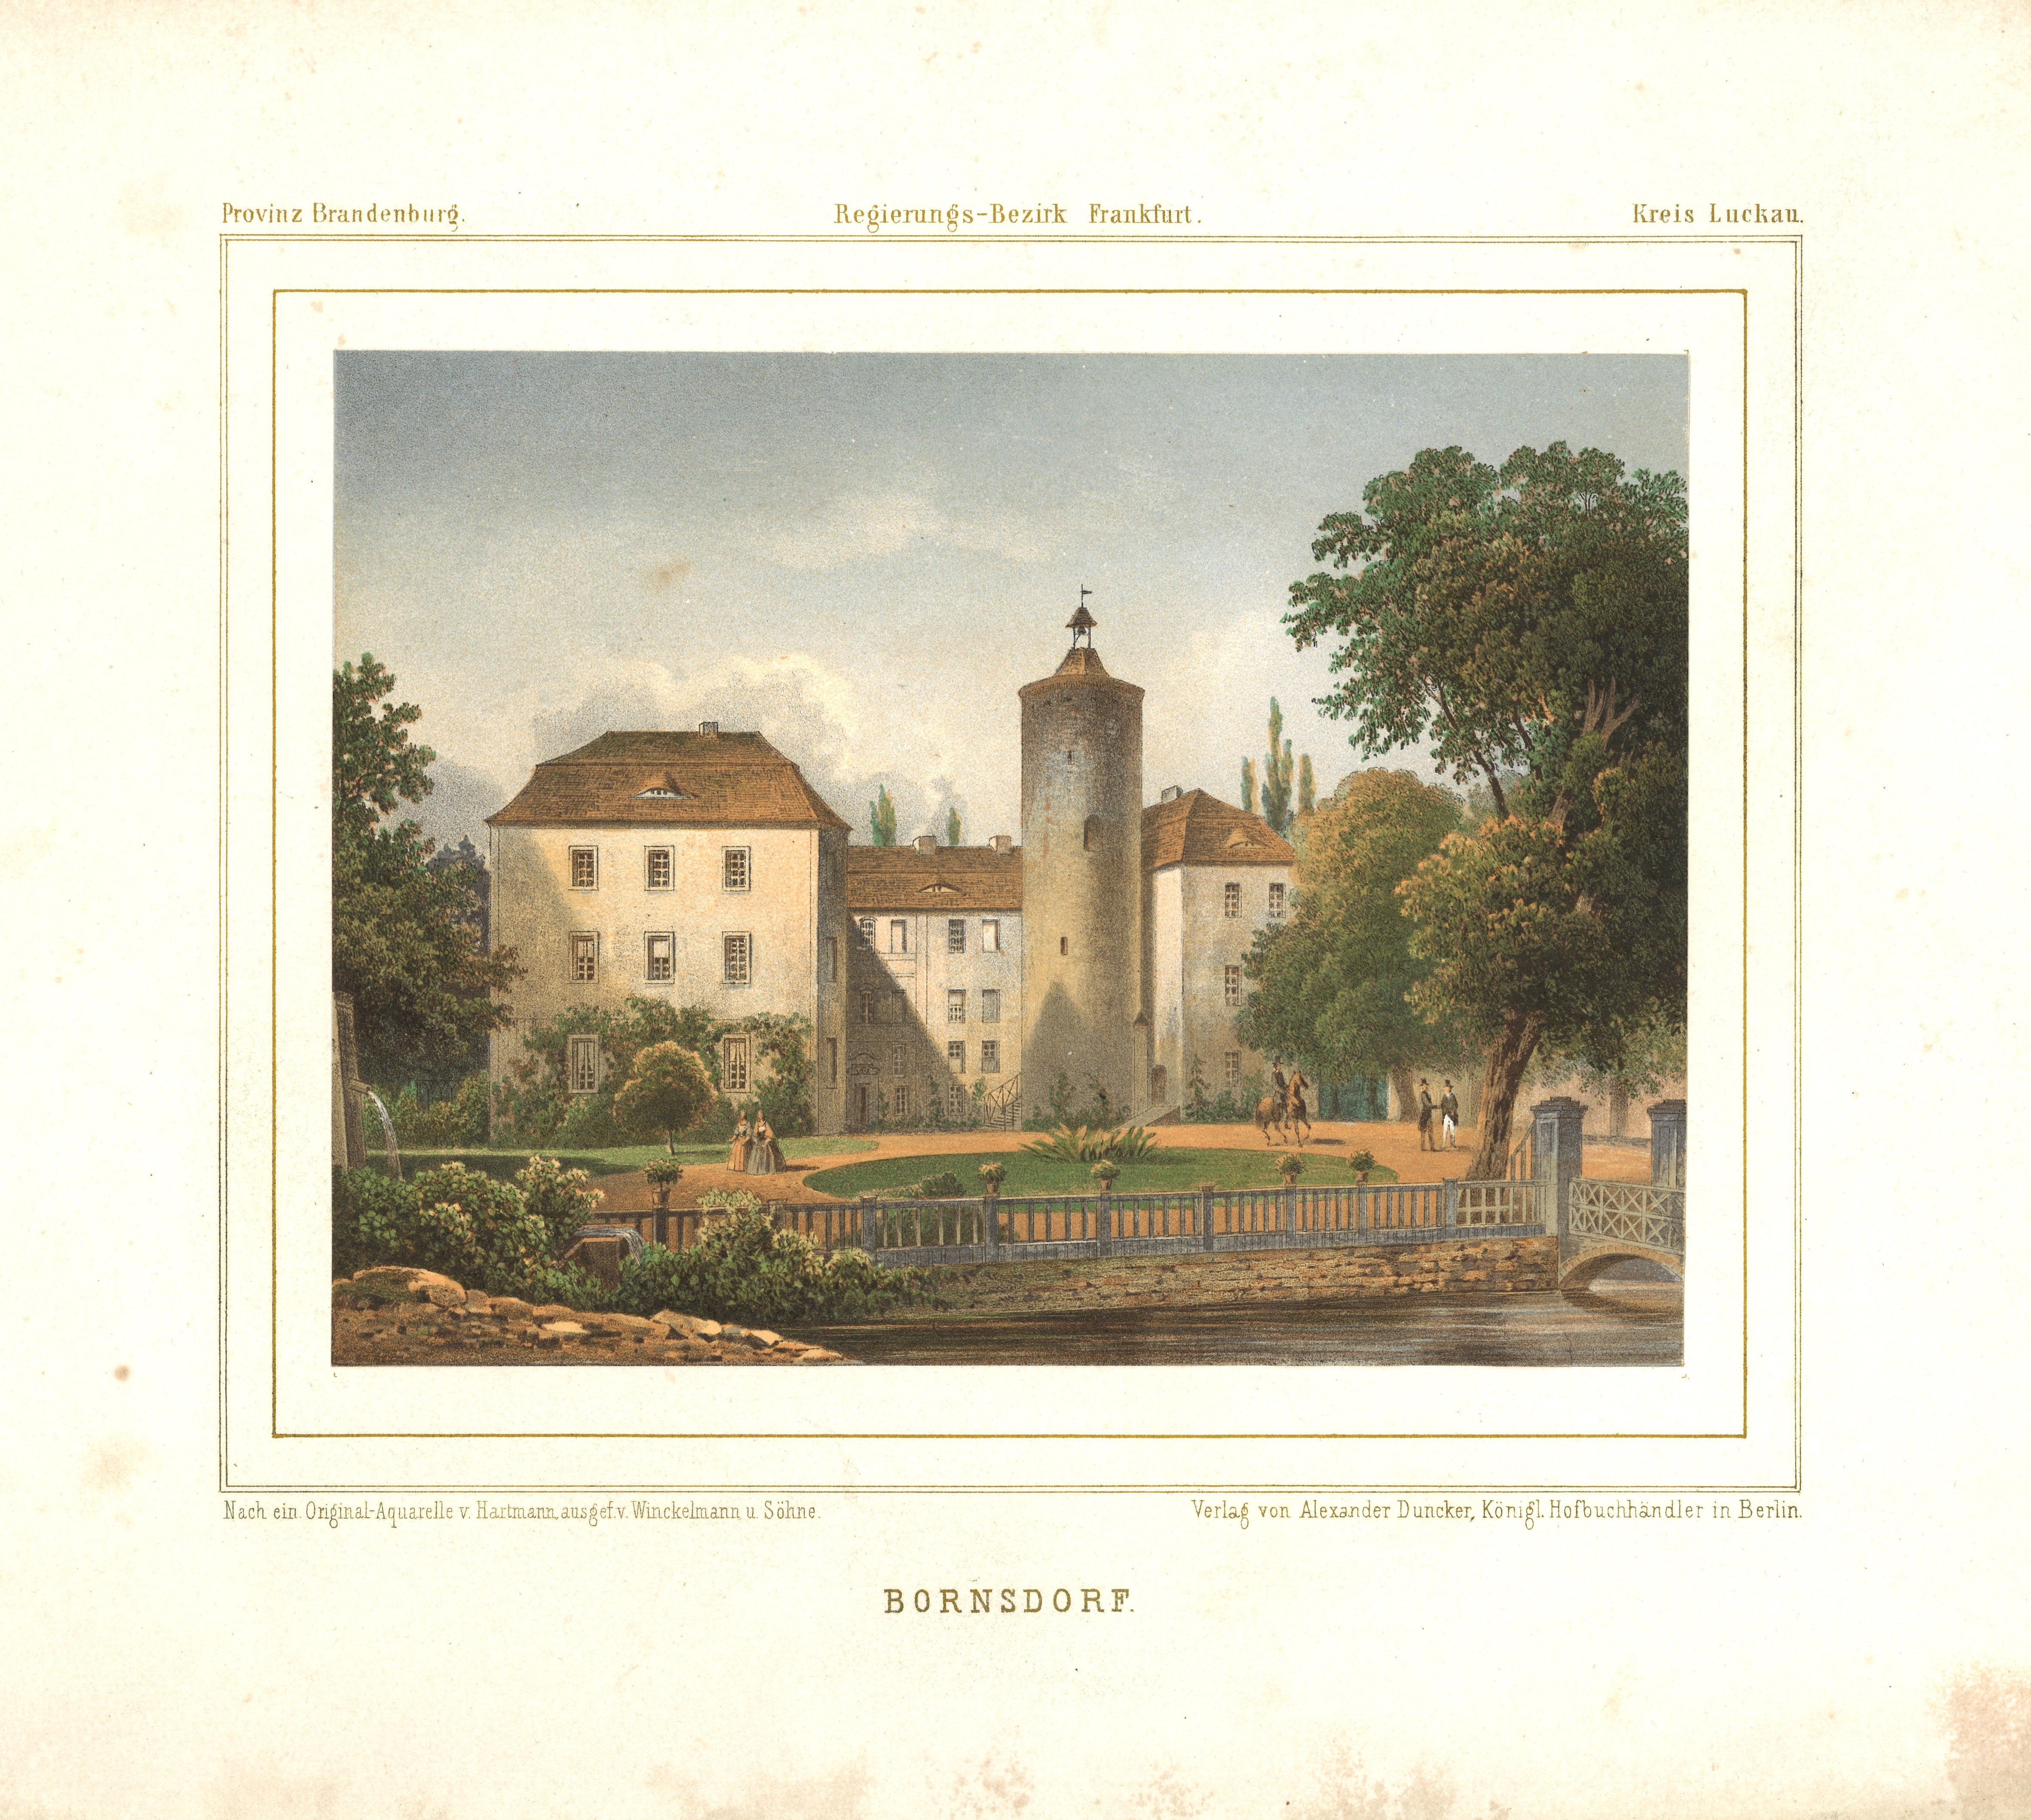 Bornsdorf (Kr. Luckau): Schloss (Landesgeschichtliche Vereinigung für die Mark Brandenburg e.V., Archiv CC BY)